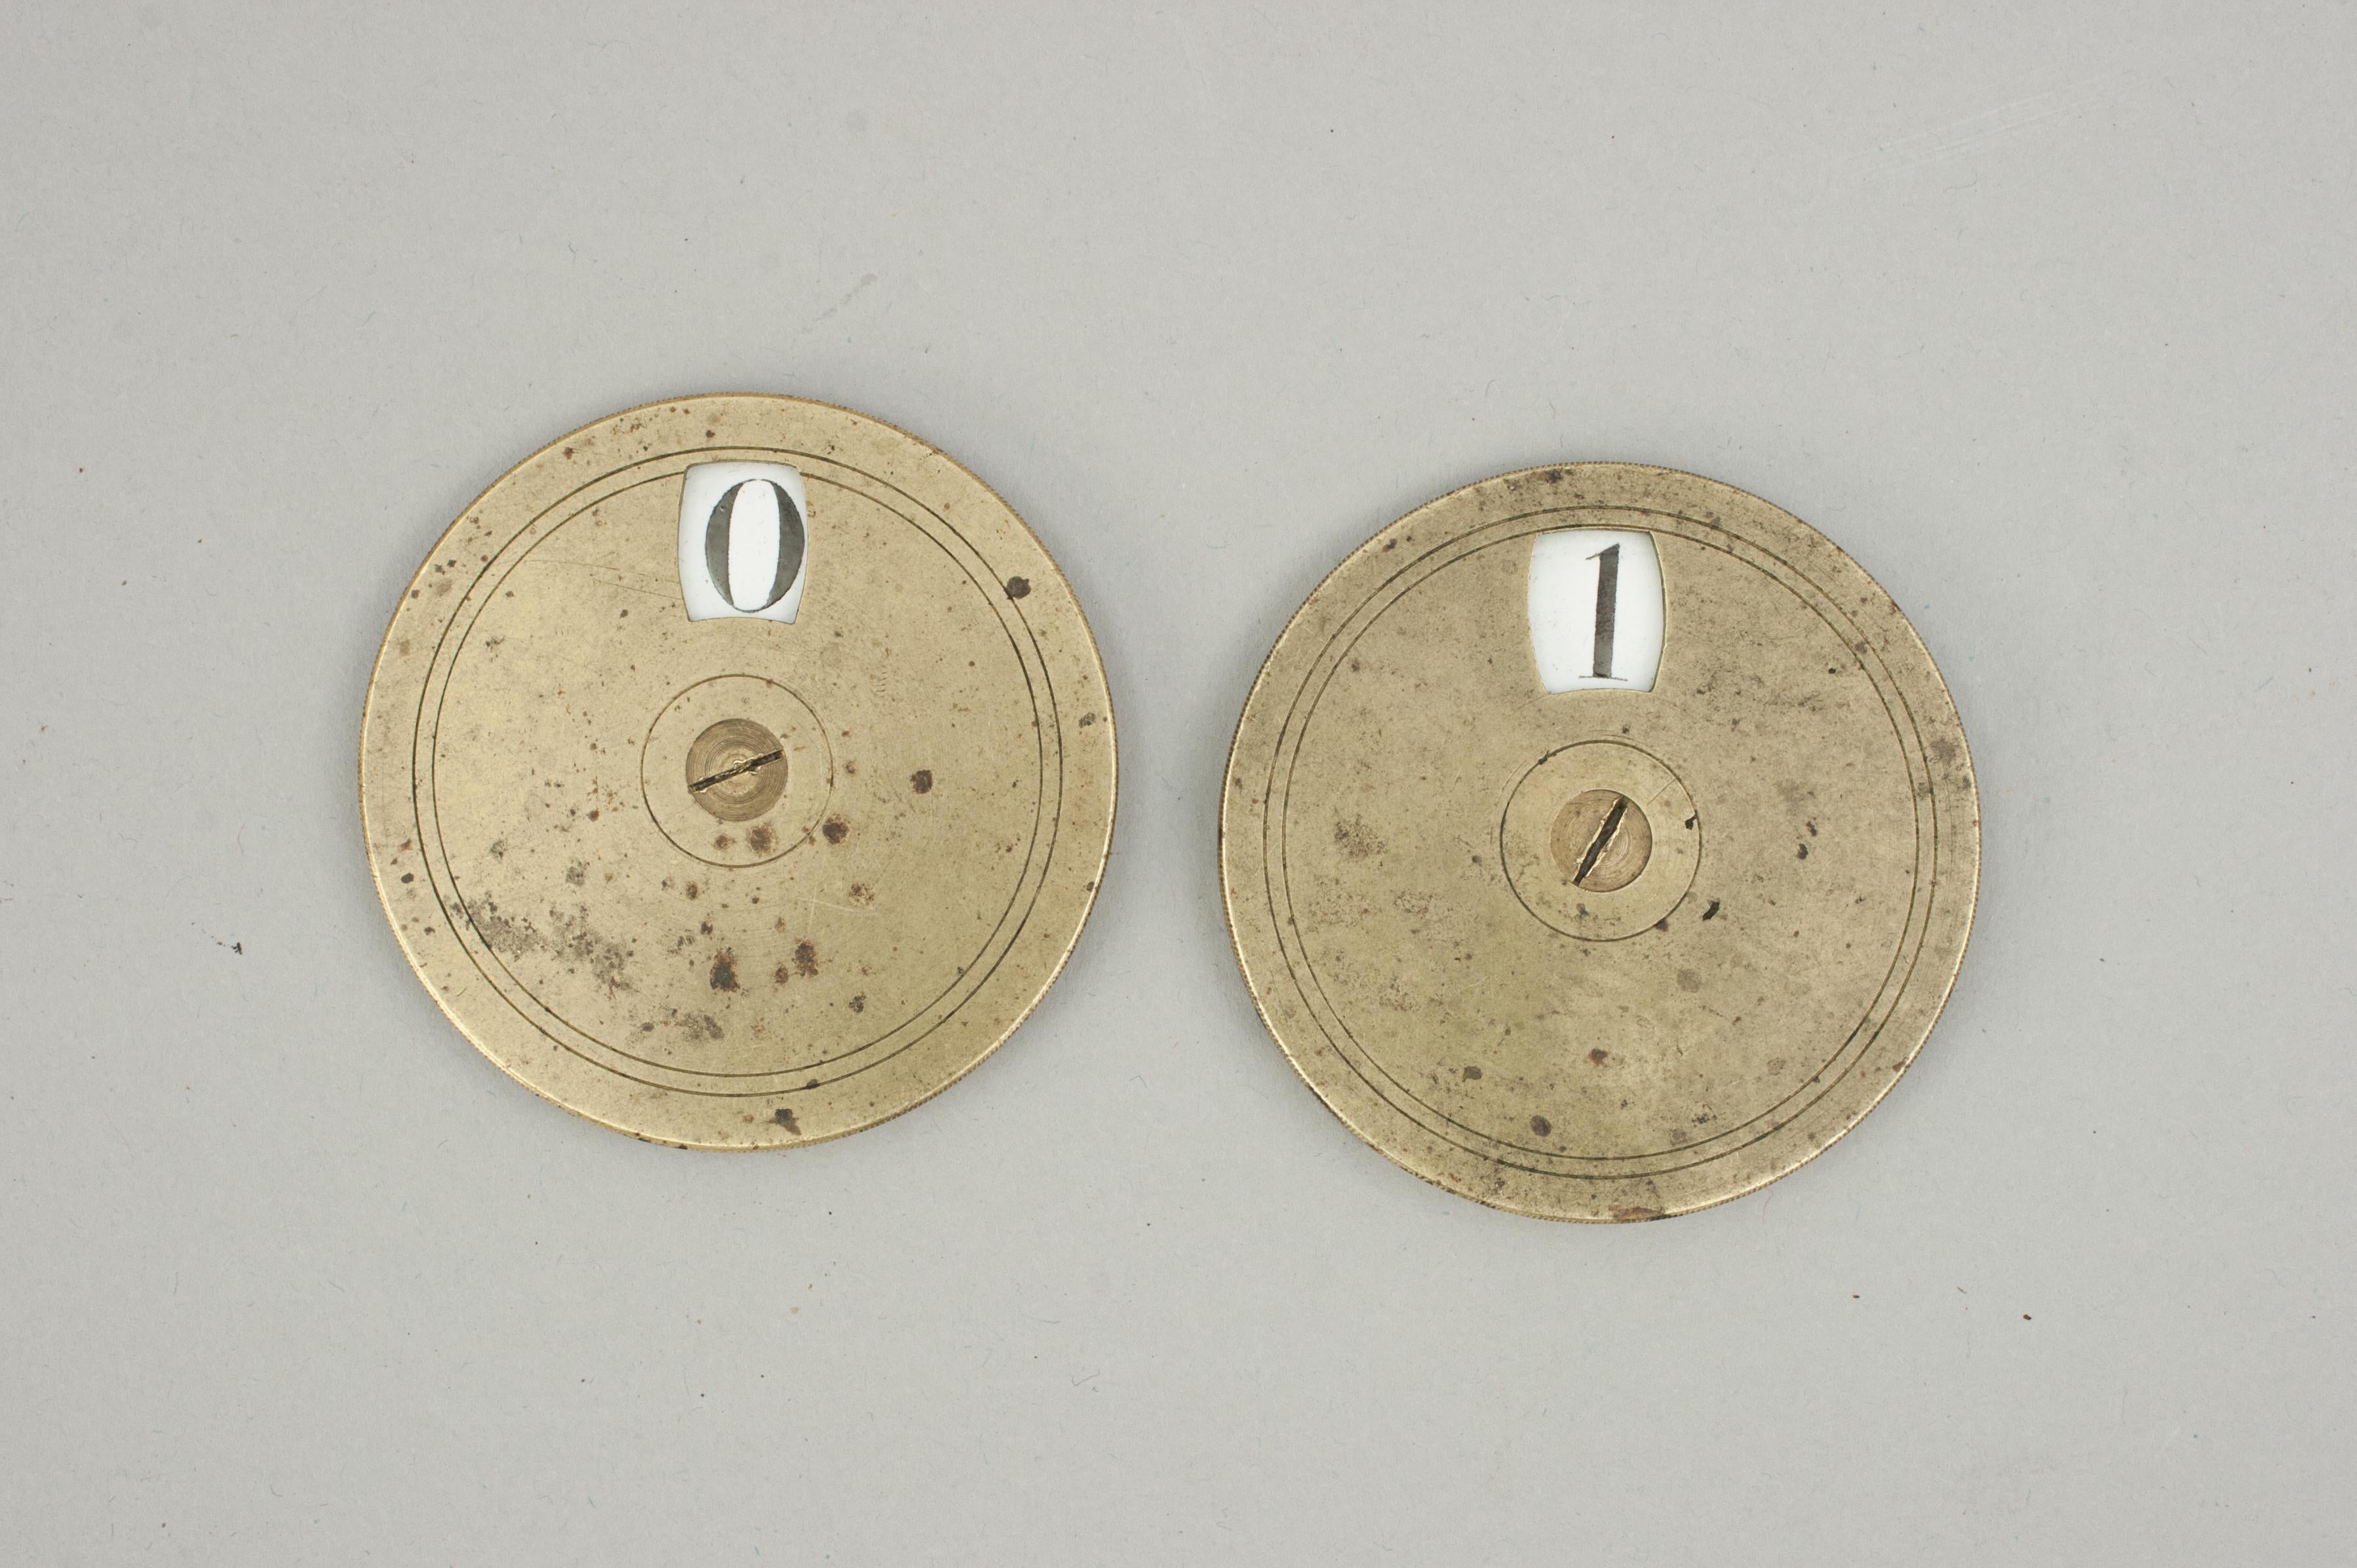 Messing Spielstand Zähler.
Ein Paar viktorianischer Whist-Spielstandanzeiger aus Messing und Rotguss. Die Oberseite des runden Zählers dreht sich, um die Punktzahl (0 bis 9) im Fenster anzuzeigen. Die schwarzen Zahlen stehen auf einem weiß